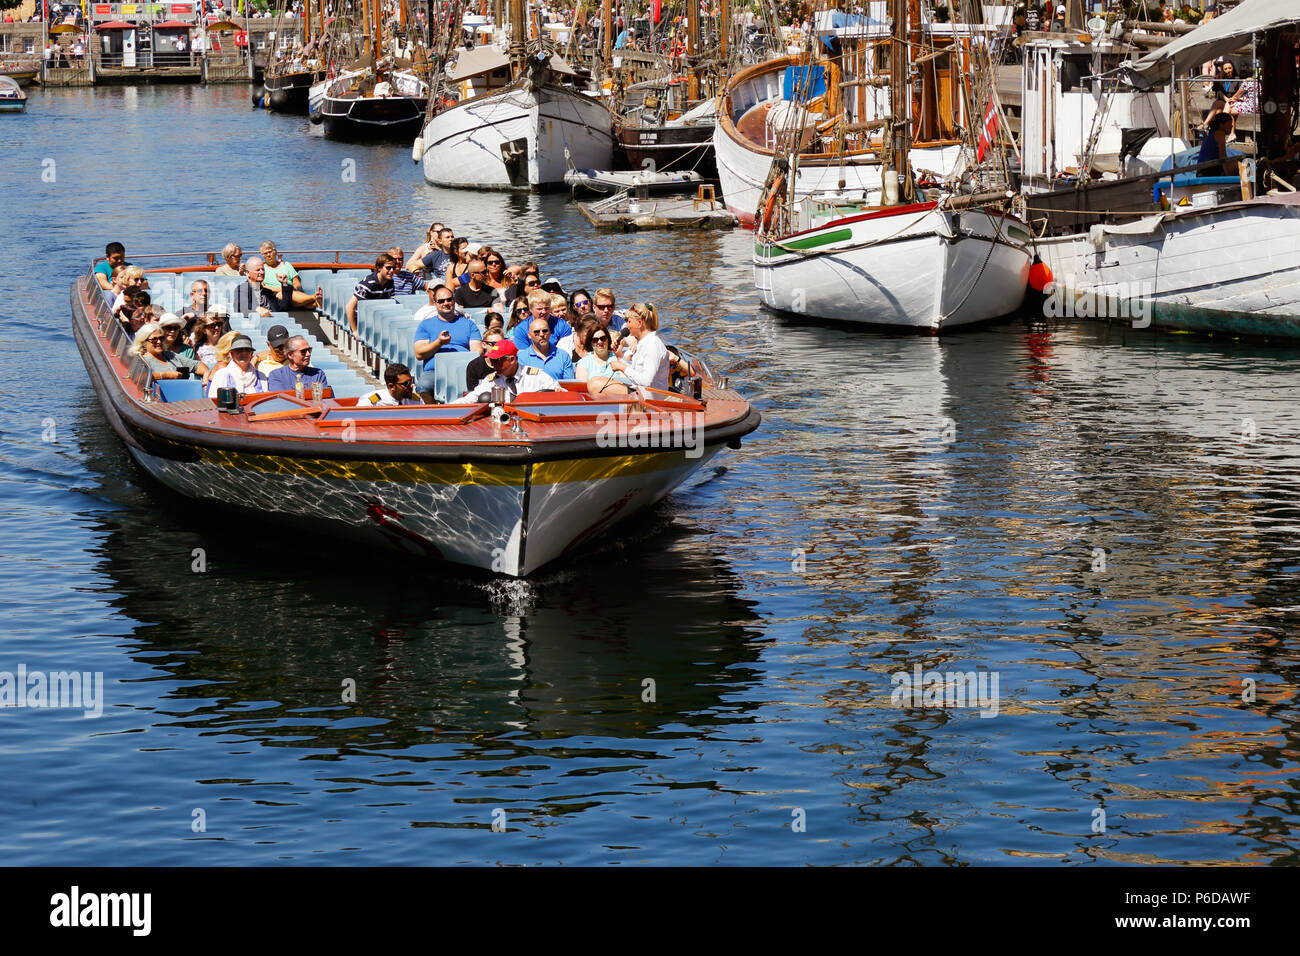 Kopenhagen, Dänemark - 27. Juni 2018: Touristen in einem oben offenen Schiff im Kanal Tour Service am Nyhavn Harbour. Stockfoto